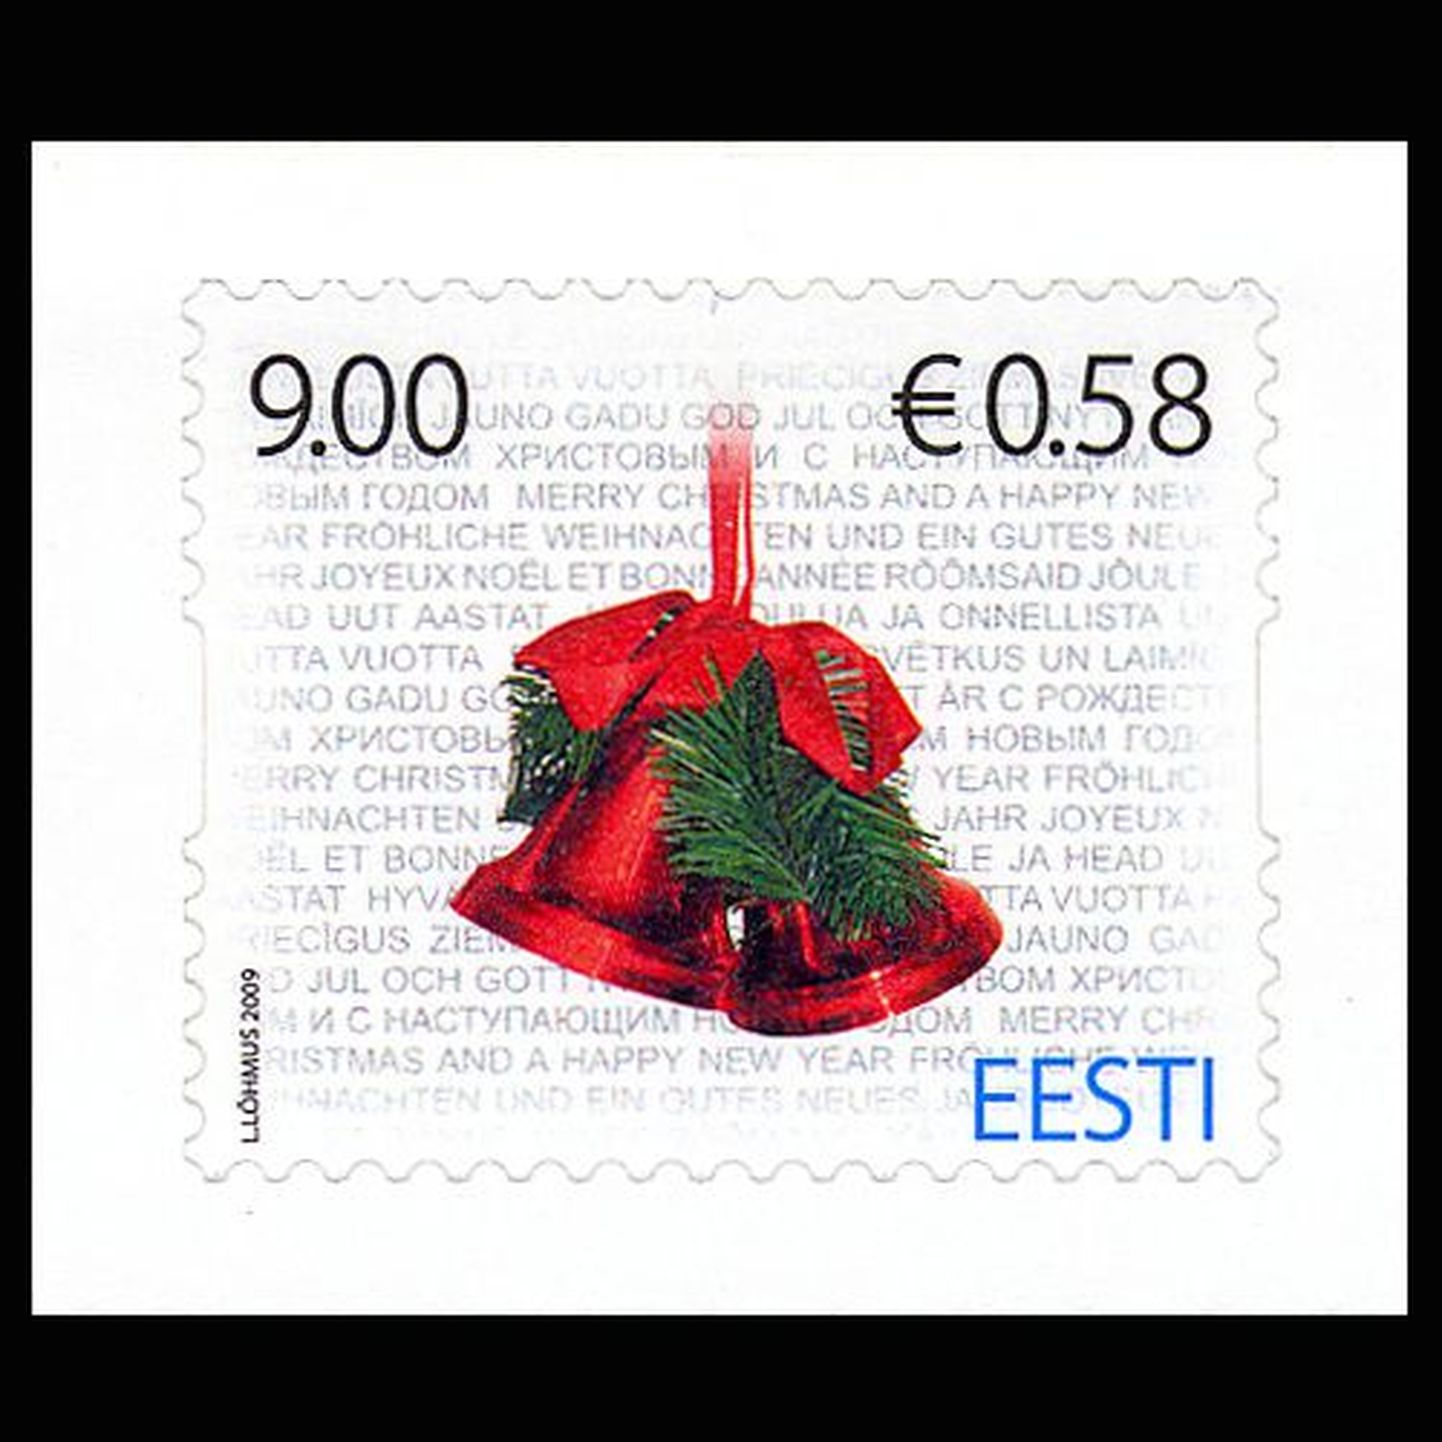 Tänavused jõuluteemalised postmargid Eesti Postilt.